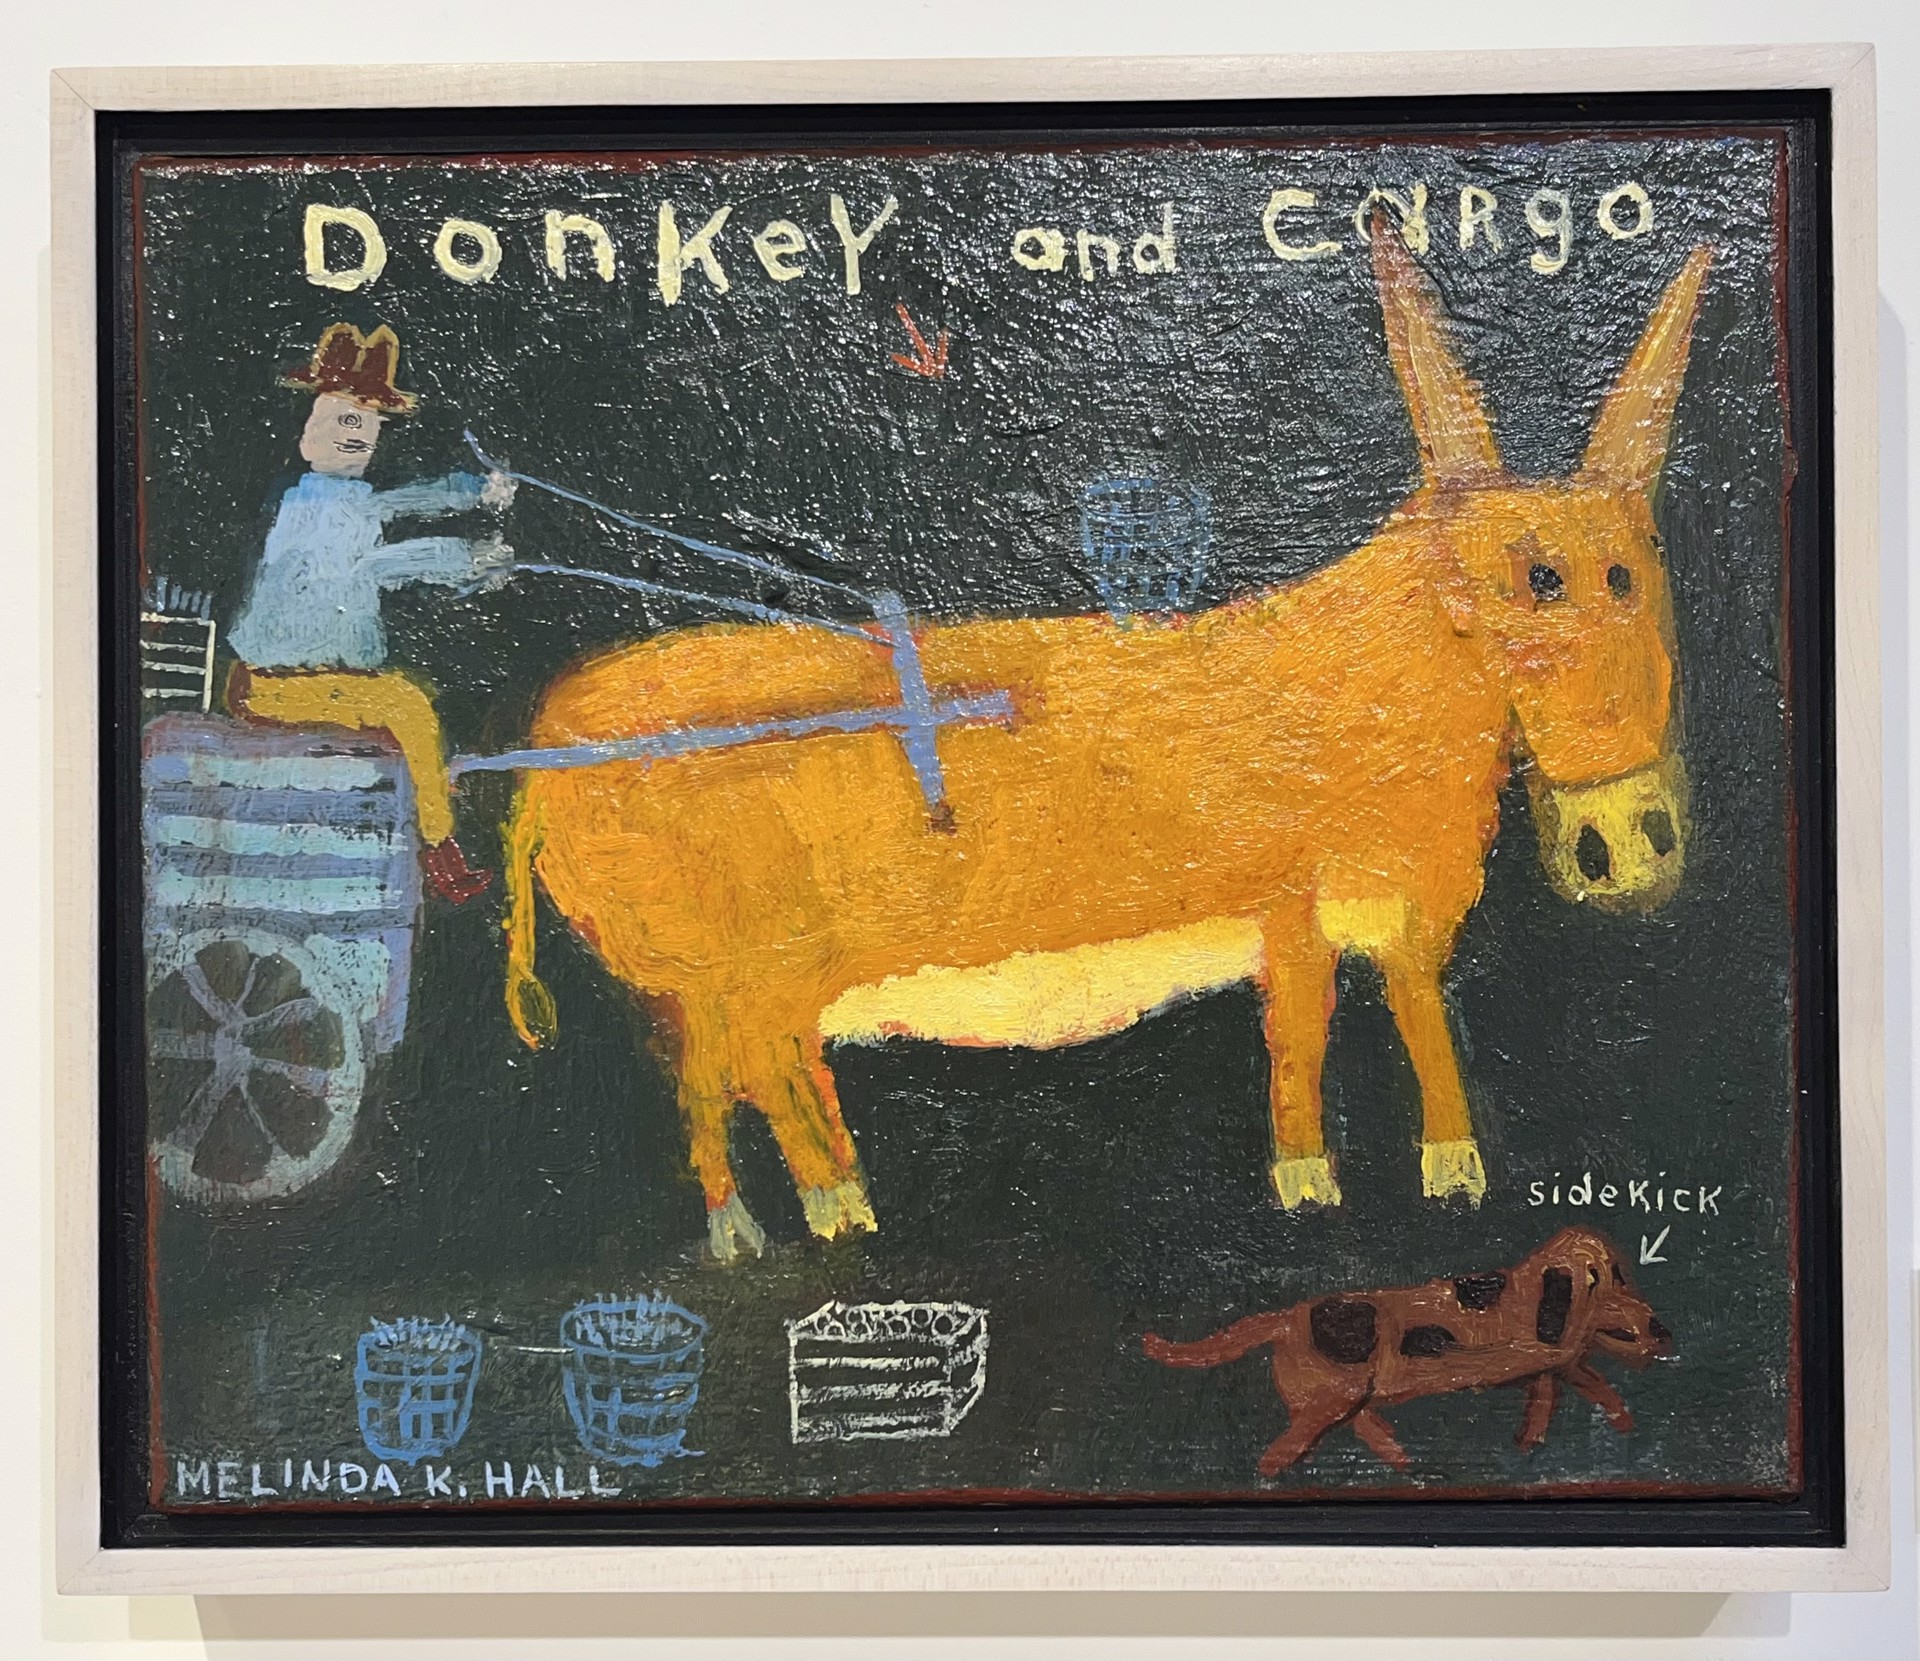 Donkey and Cargo by Melinda K. Hall